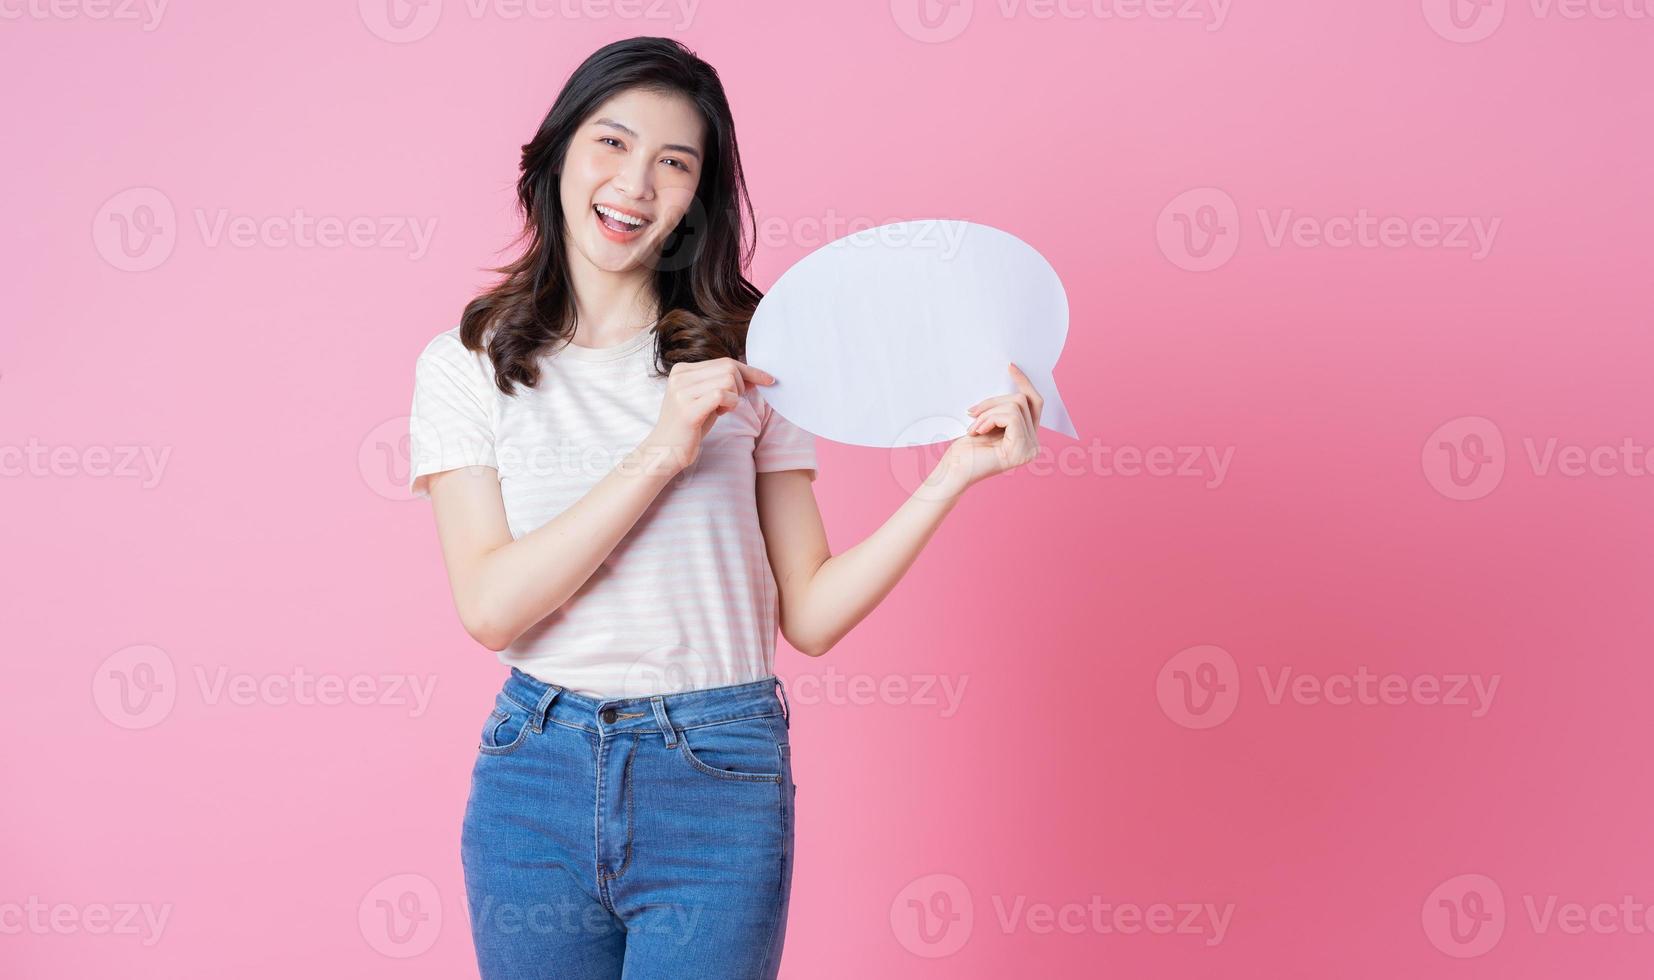 afbeelding van een jonge aziatische vrouw met een berichtbel op de linkachtergrond foto